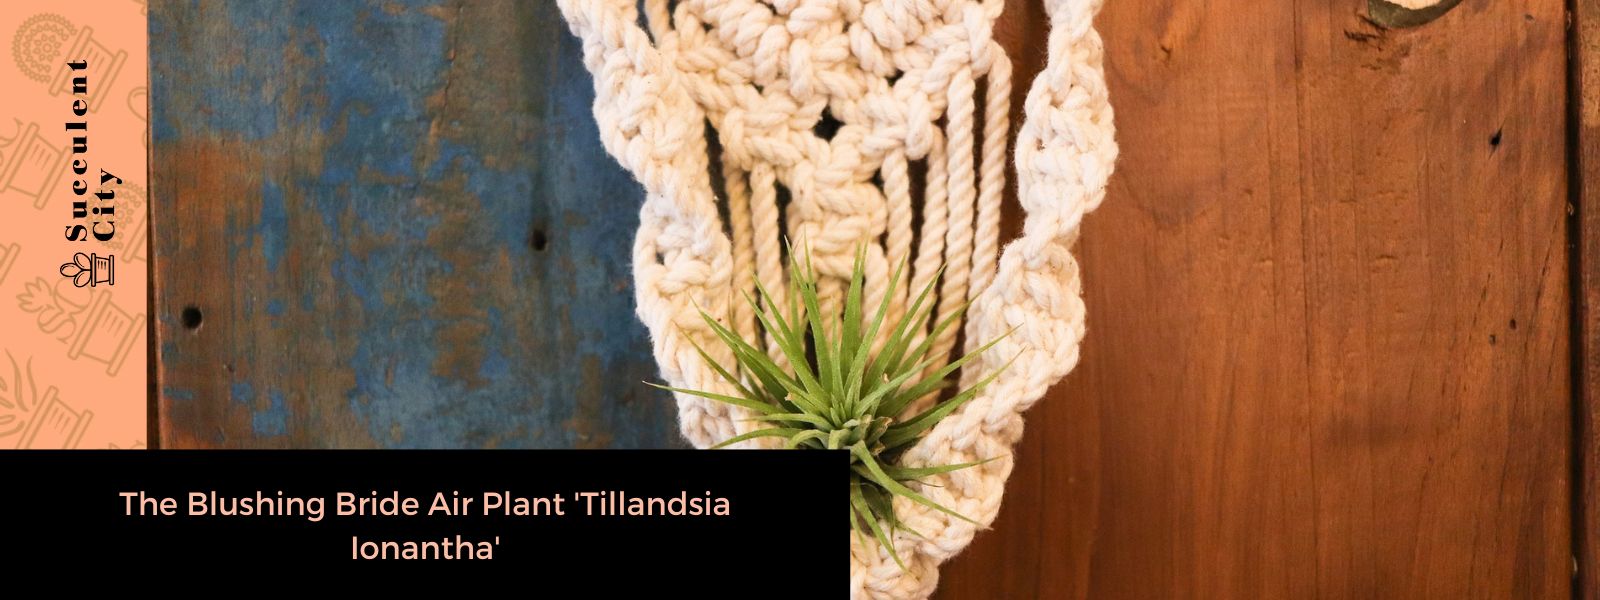 La planta de aire Blushing Bride “Tillandsia Ionantha”